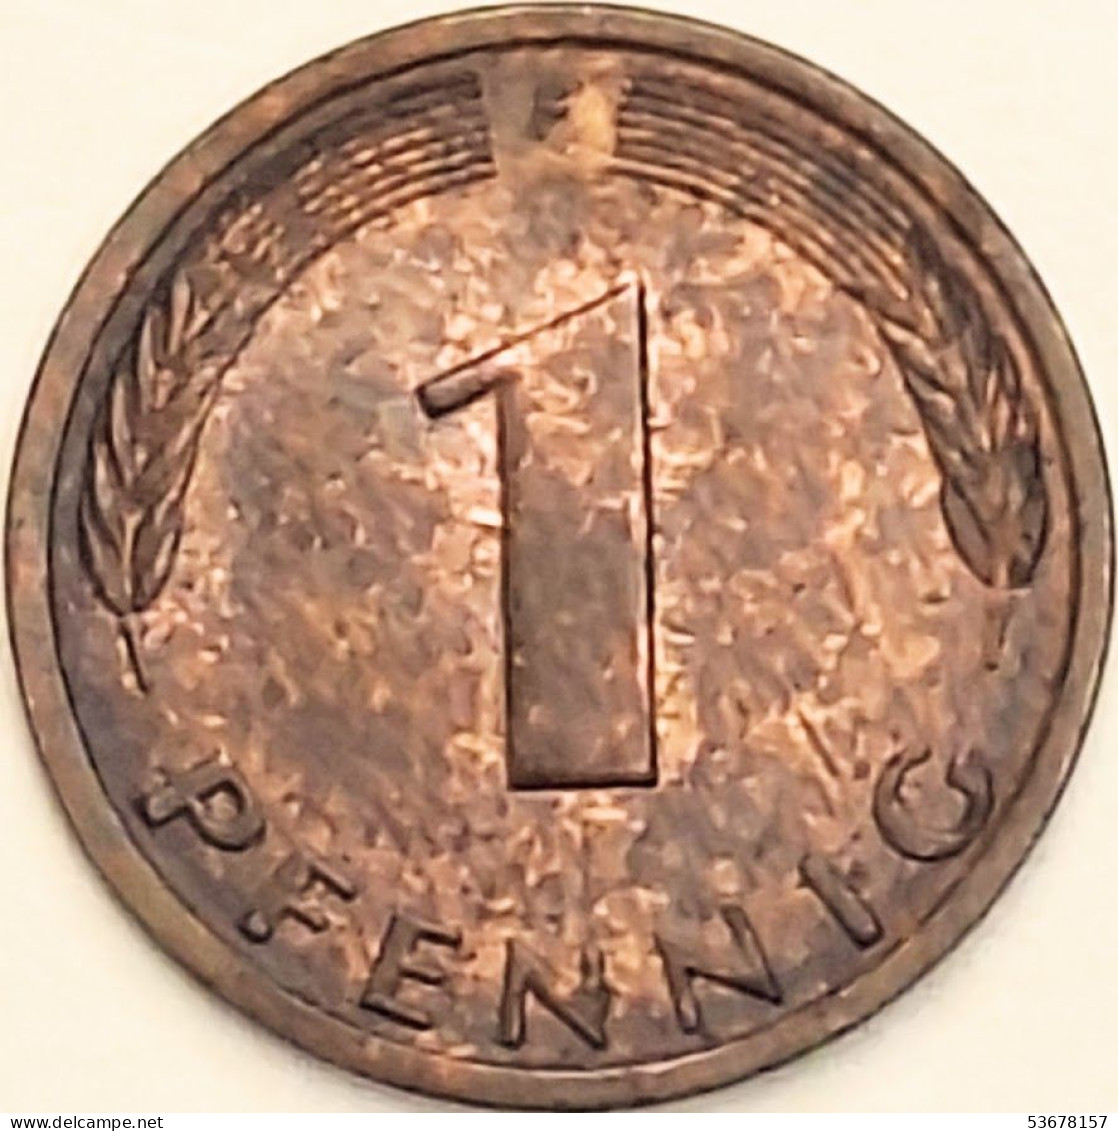 Germany Federal Republic - Pfennig 1990 F, KM# 105 (#4506) - 1 Pfennig